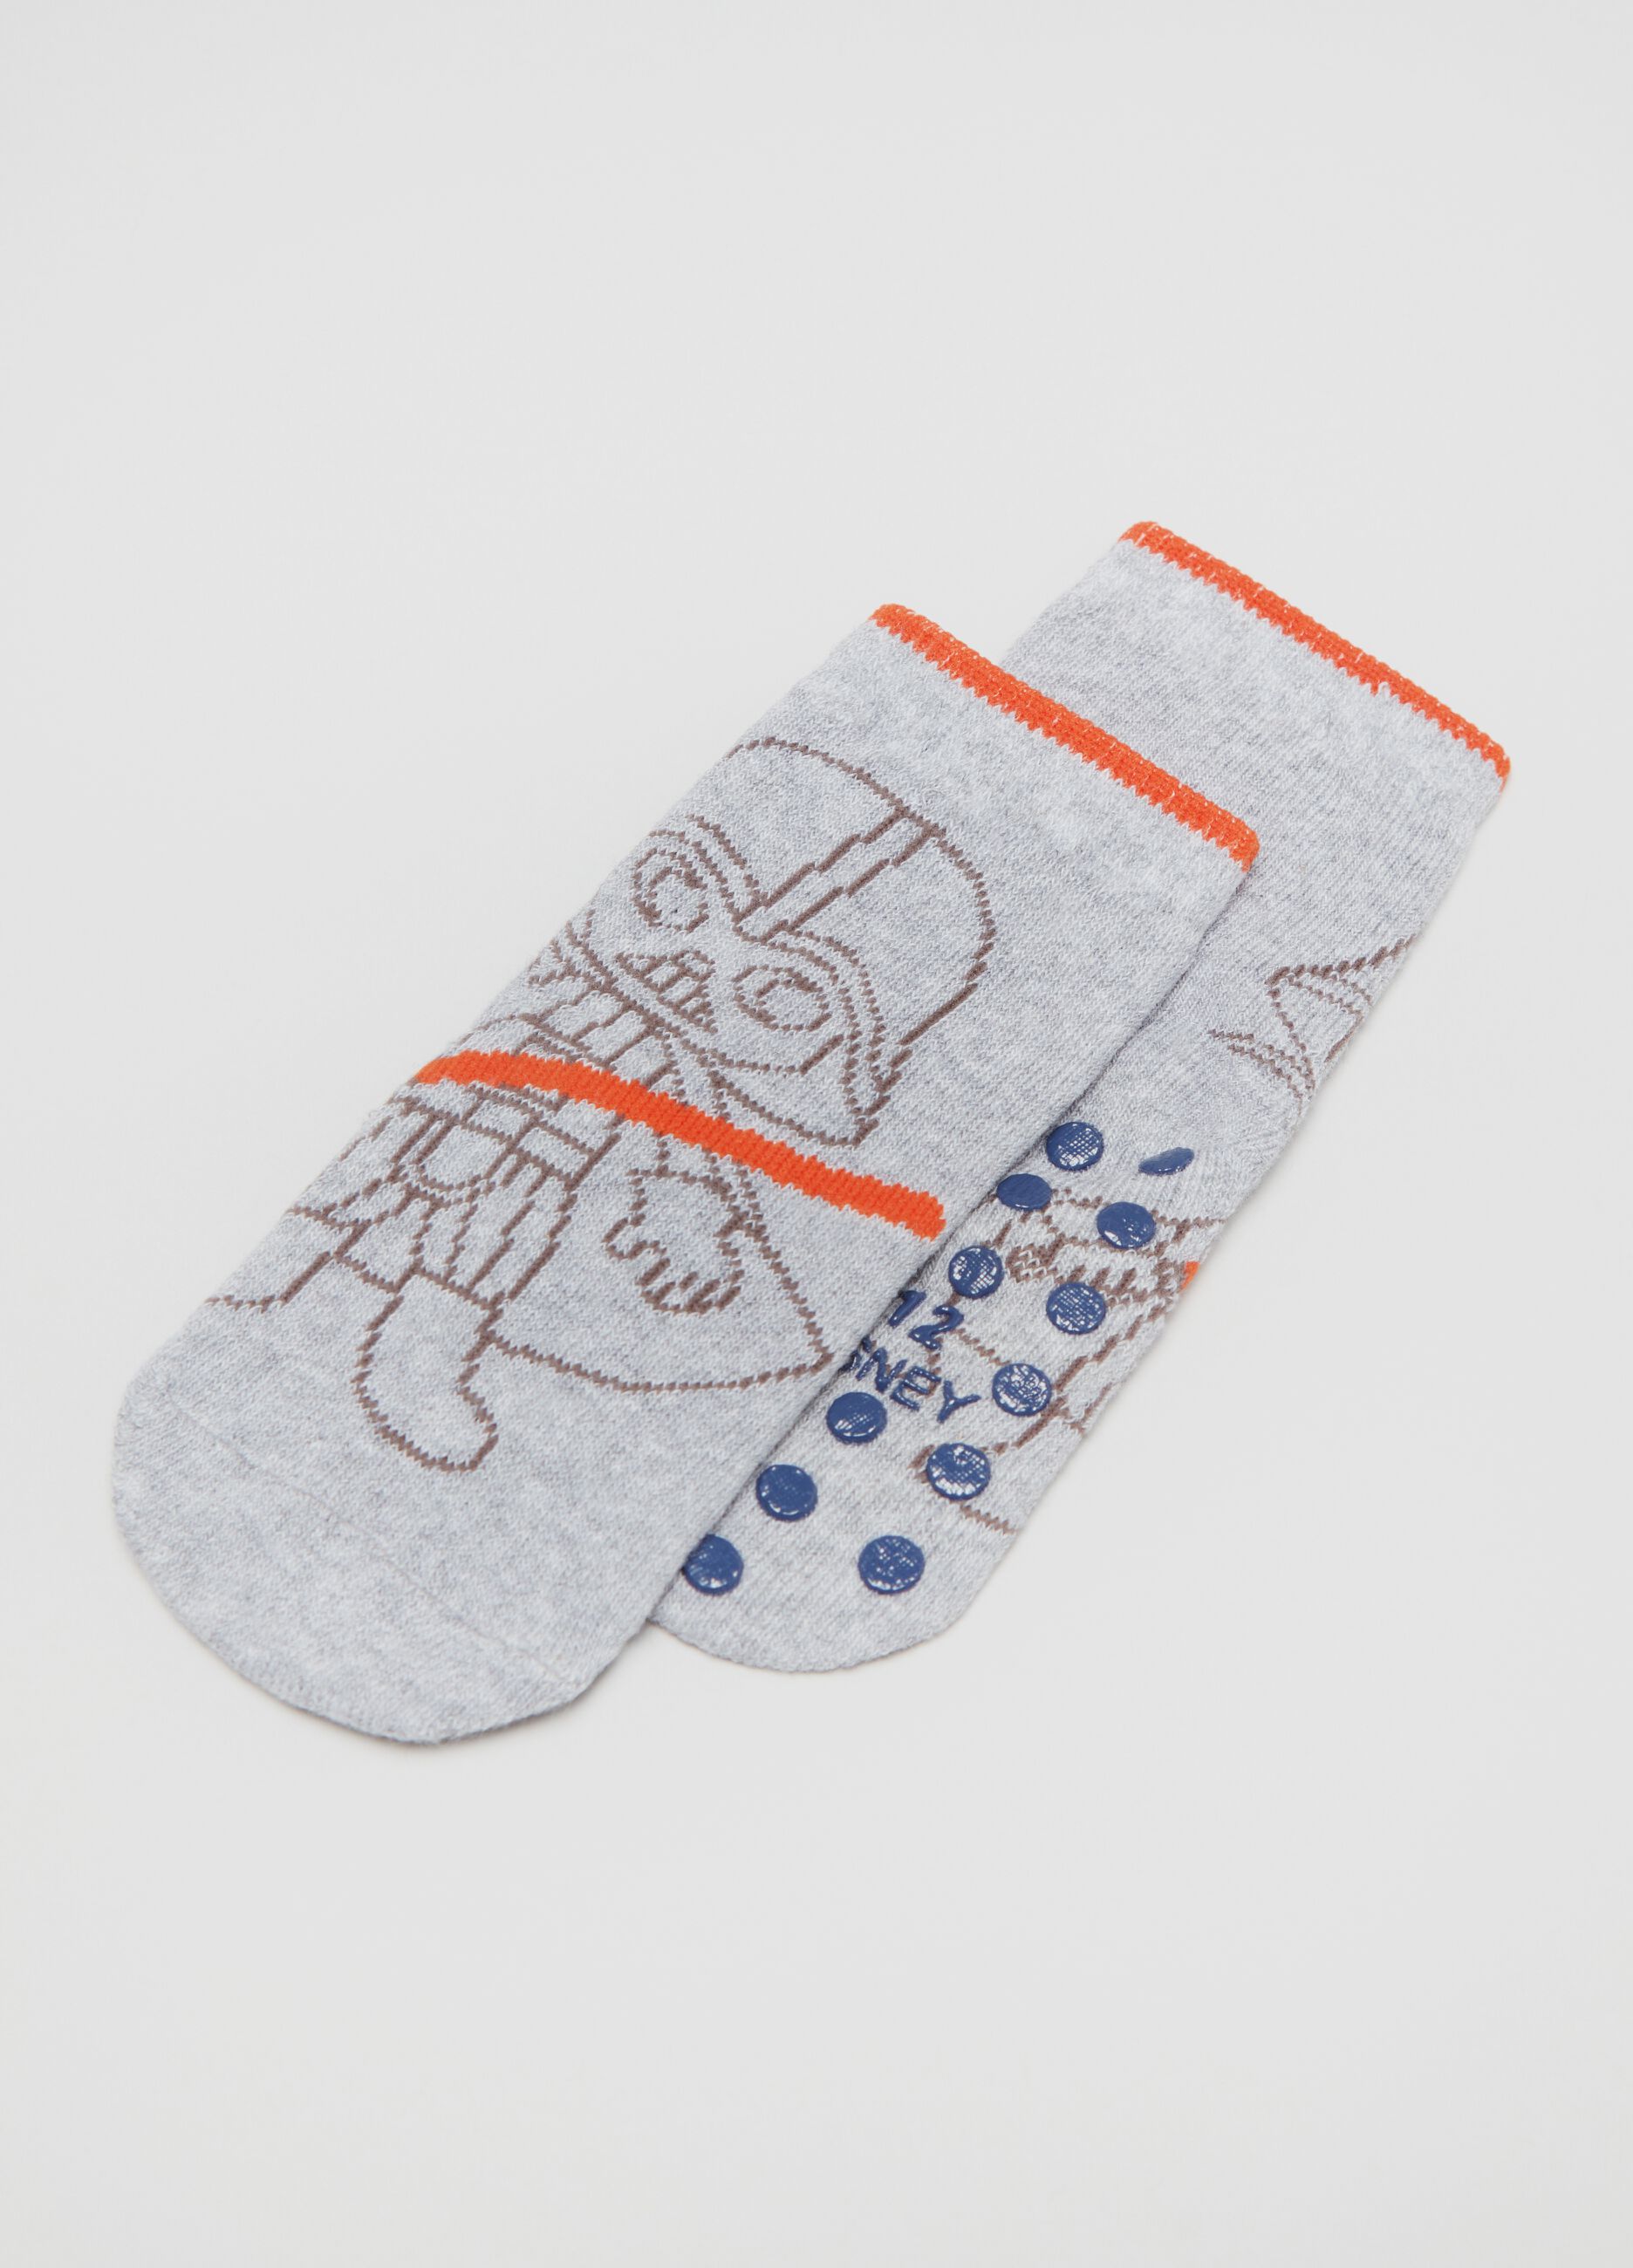 Two-pair pack Star Wars slipper socks